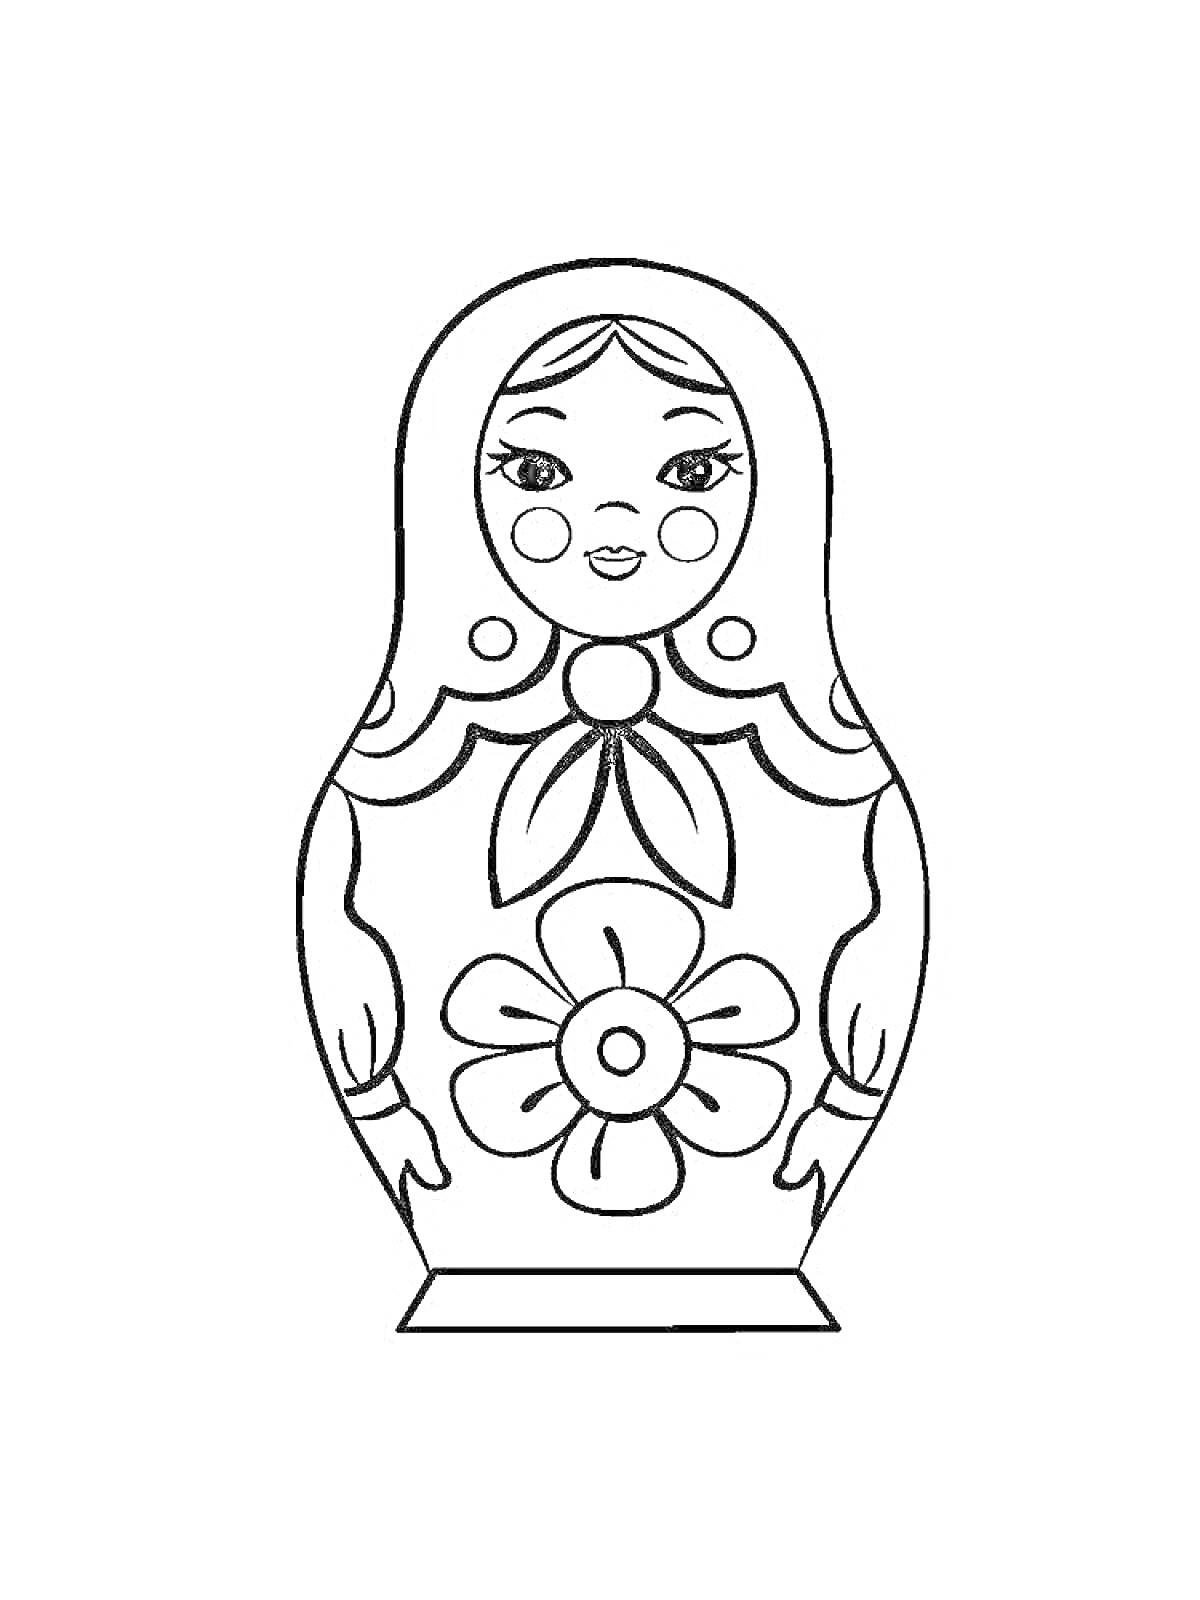 Раскраска Матрешка с цветком, лентой на шее и крупными глазами